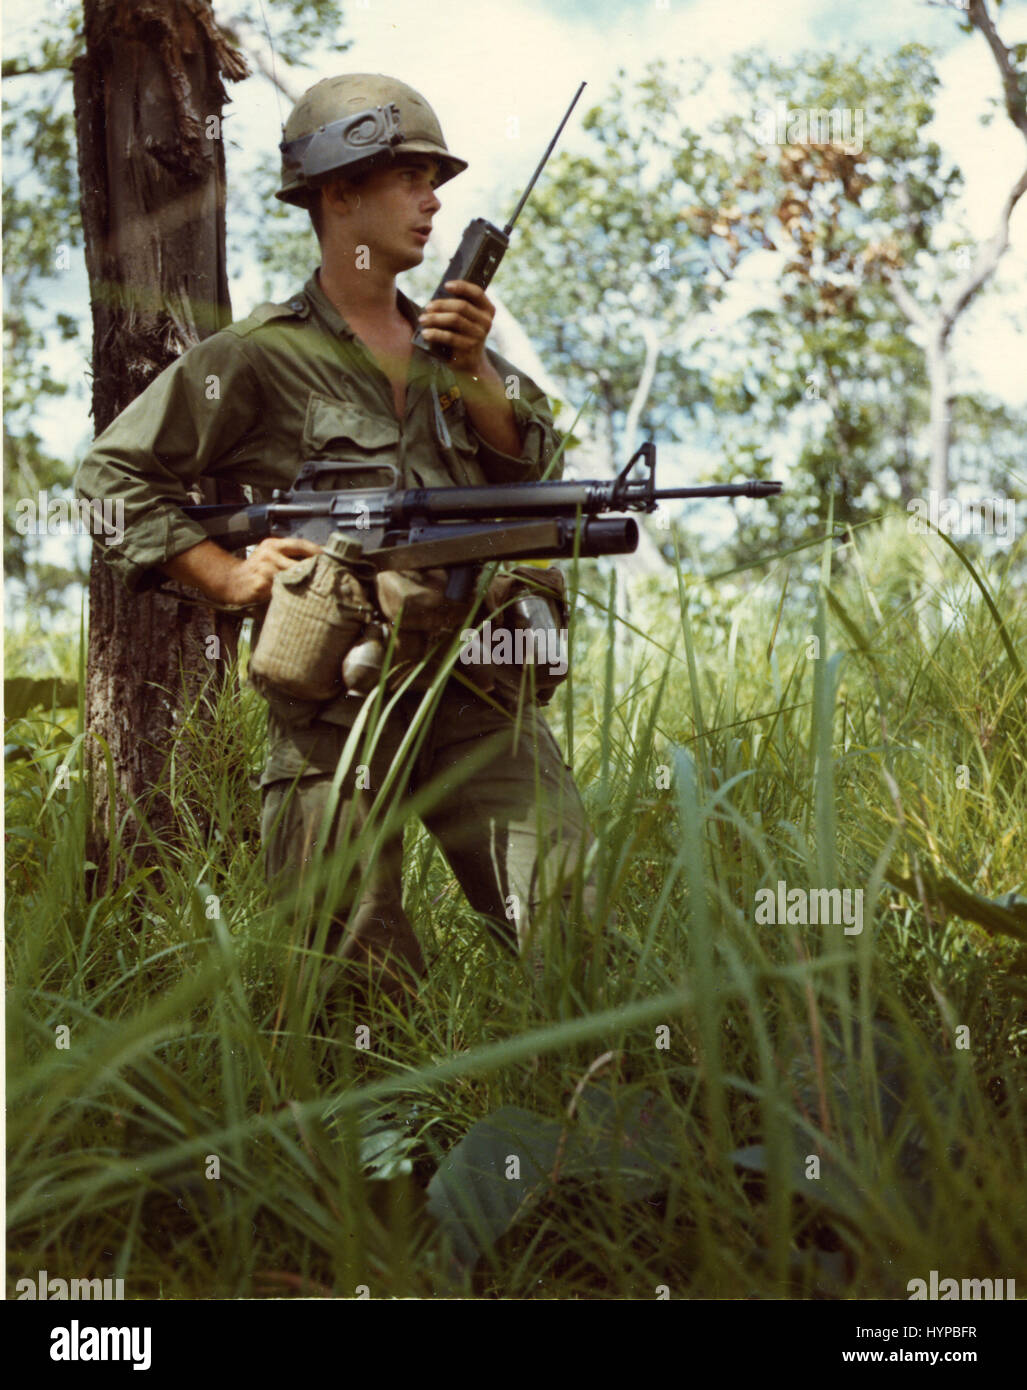 Soldat in Vietnam per Funk, 1967 Stockfoto